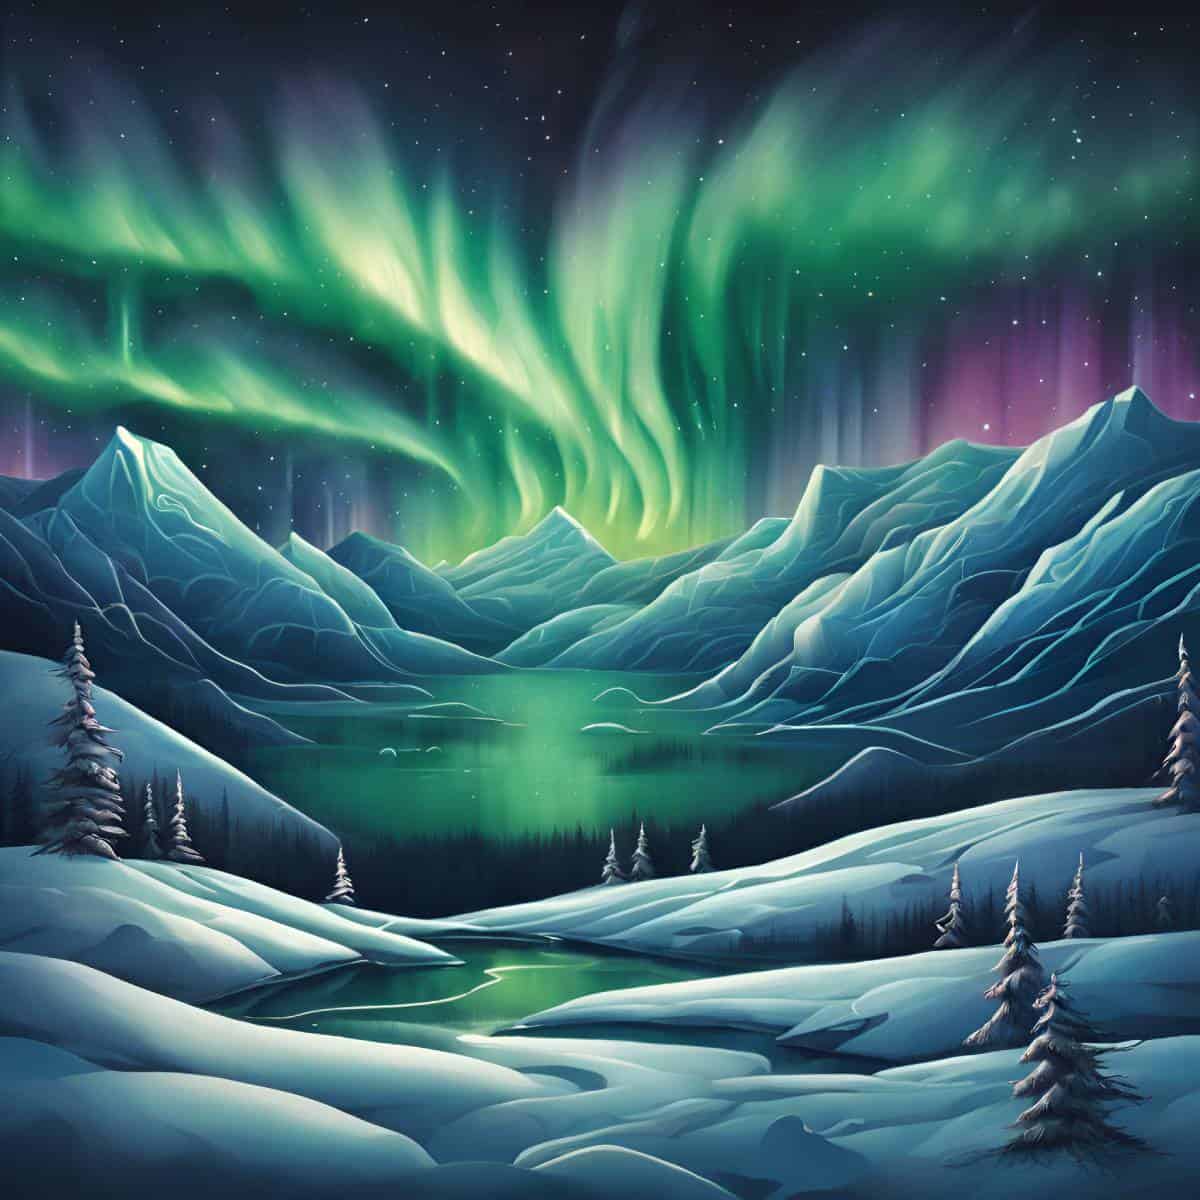 diamanti-mago-kit-pittura-diamante-Paesaggio-Aurora boreale-Etereo-Danza-originale.jpg